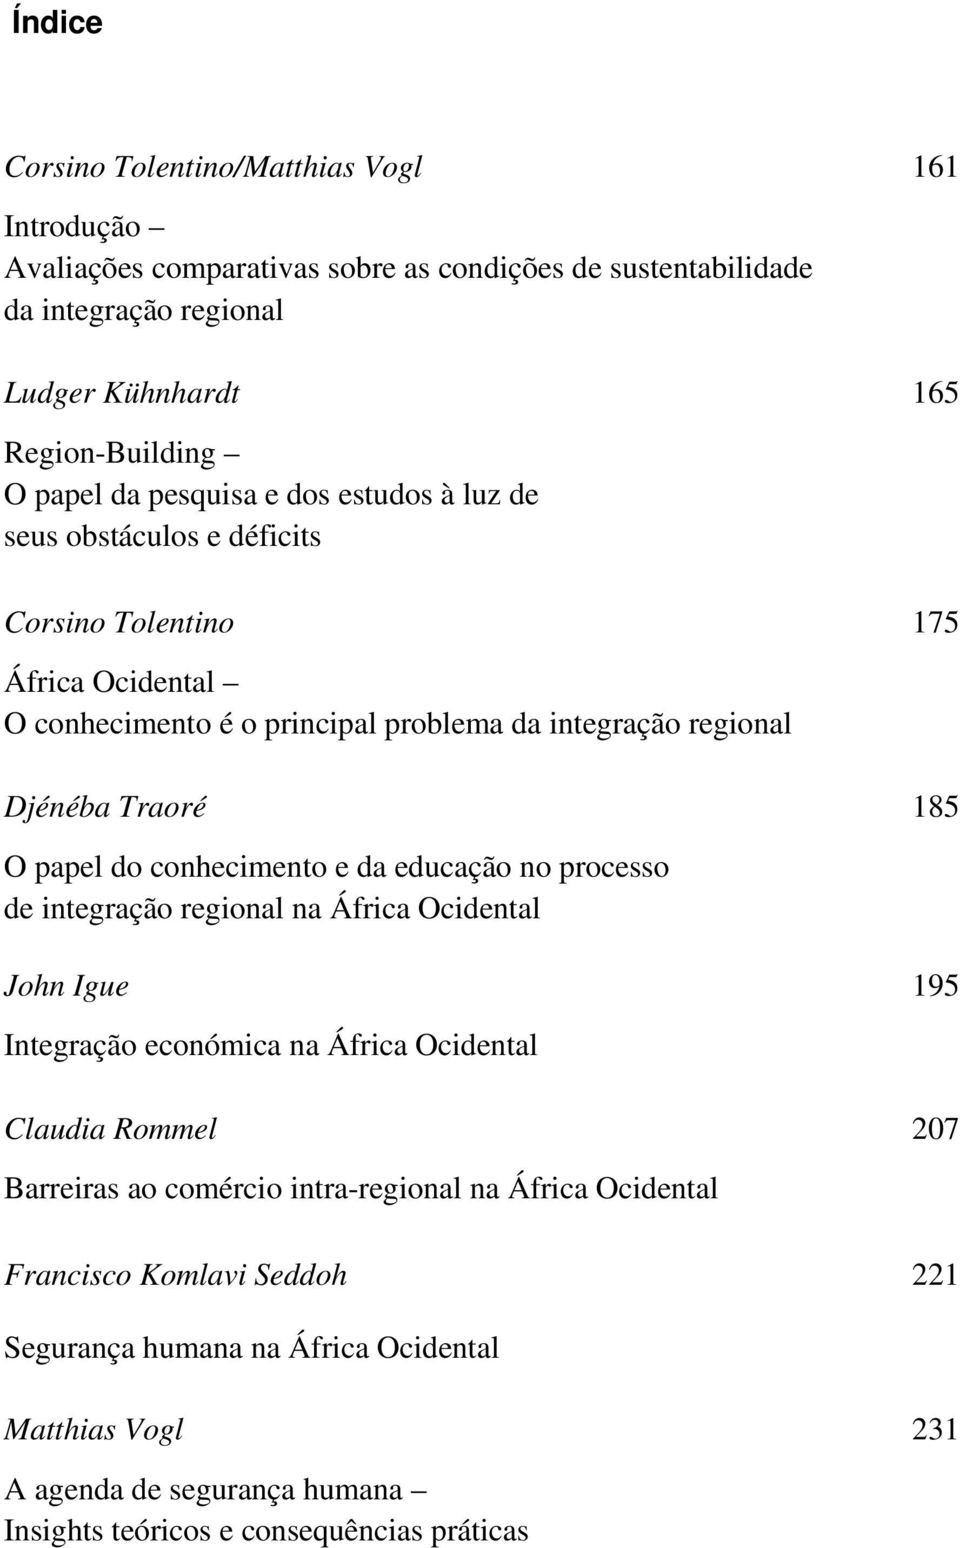 papel do conhecimento e da educação no processo de integração regional na África Ocidental John Igue 195 Integração económica na África Ocidental Claudia Rommel 207 Barreiras ao comércio